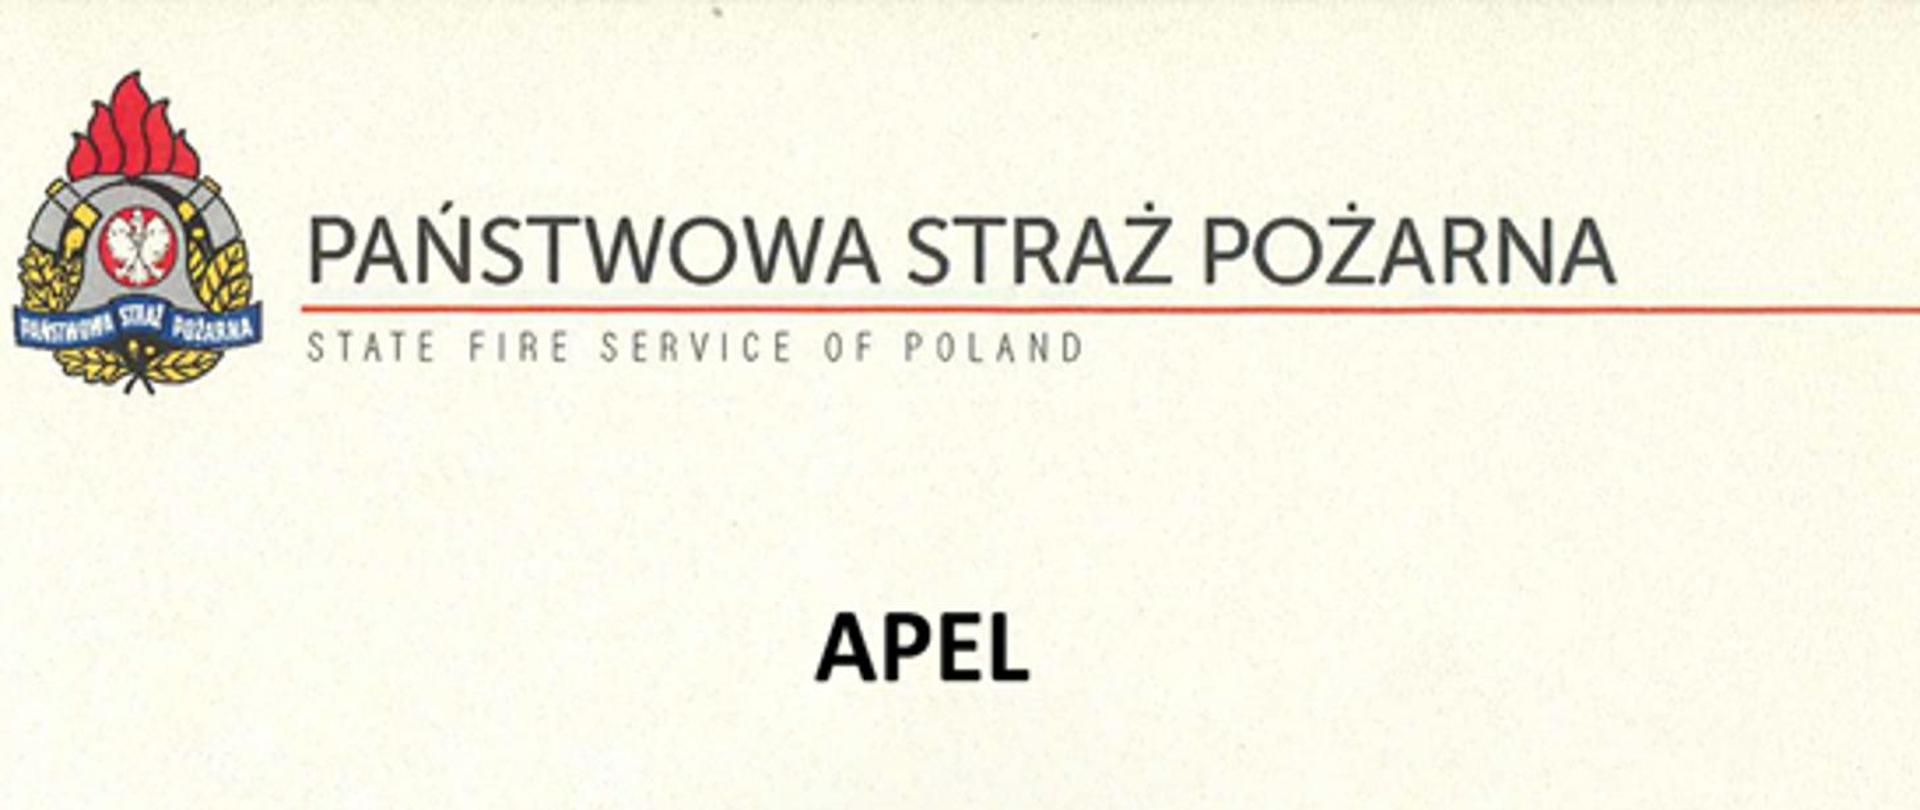 Logo i napis Państwowa Straż Pozarna oraz APEL